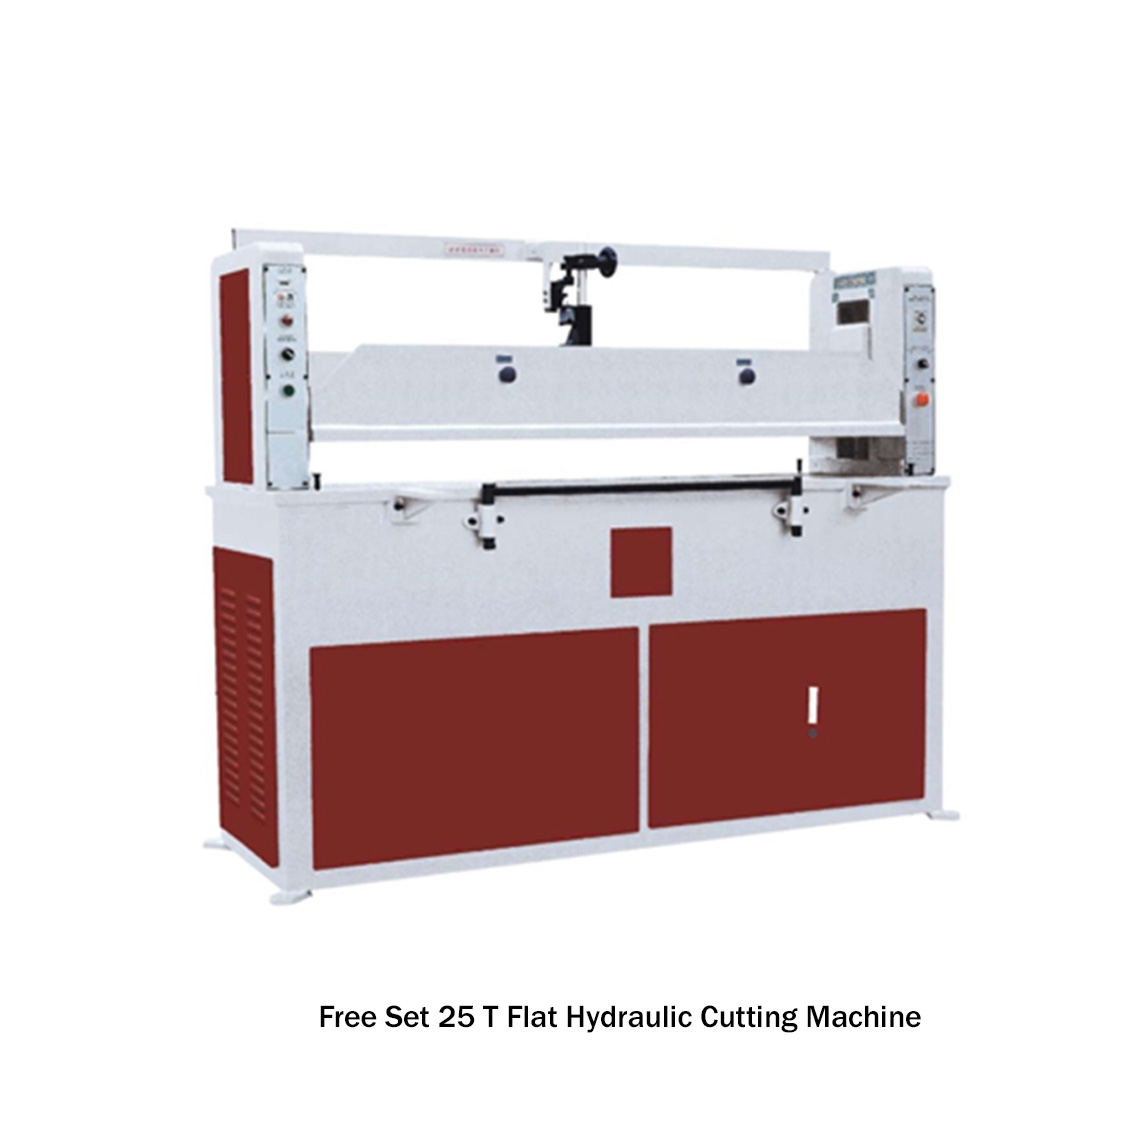 Free Set 25 T Flat Hdyraulic Cutting Machine